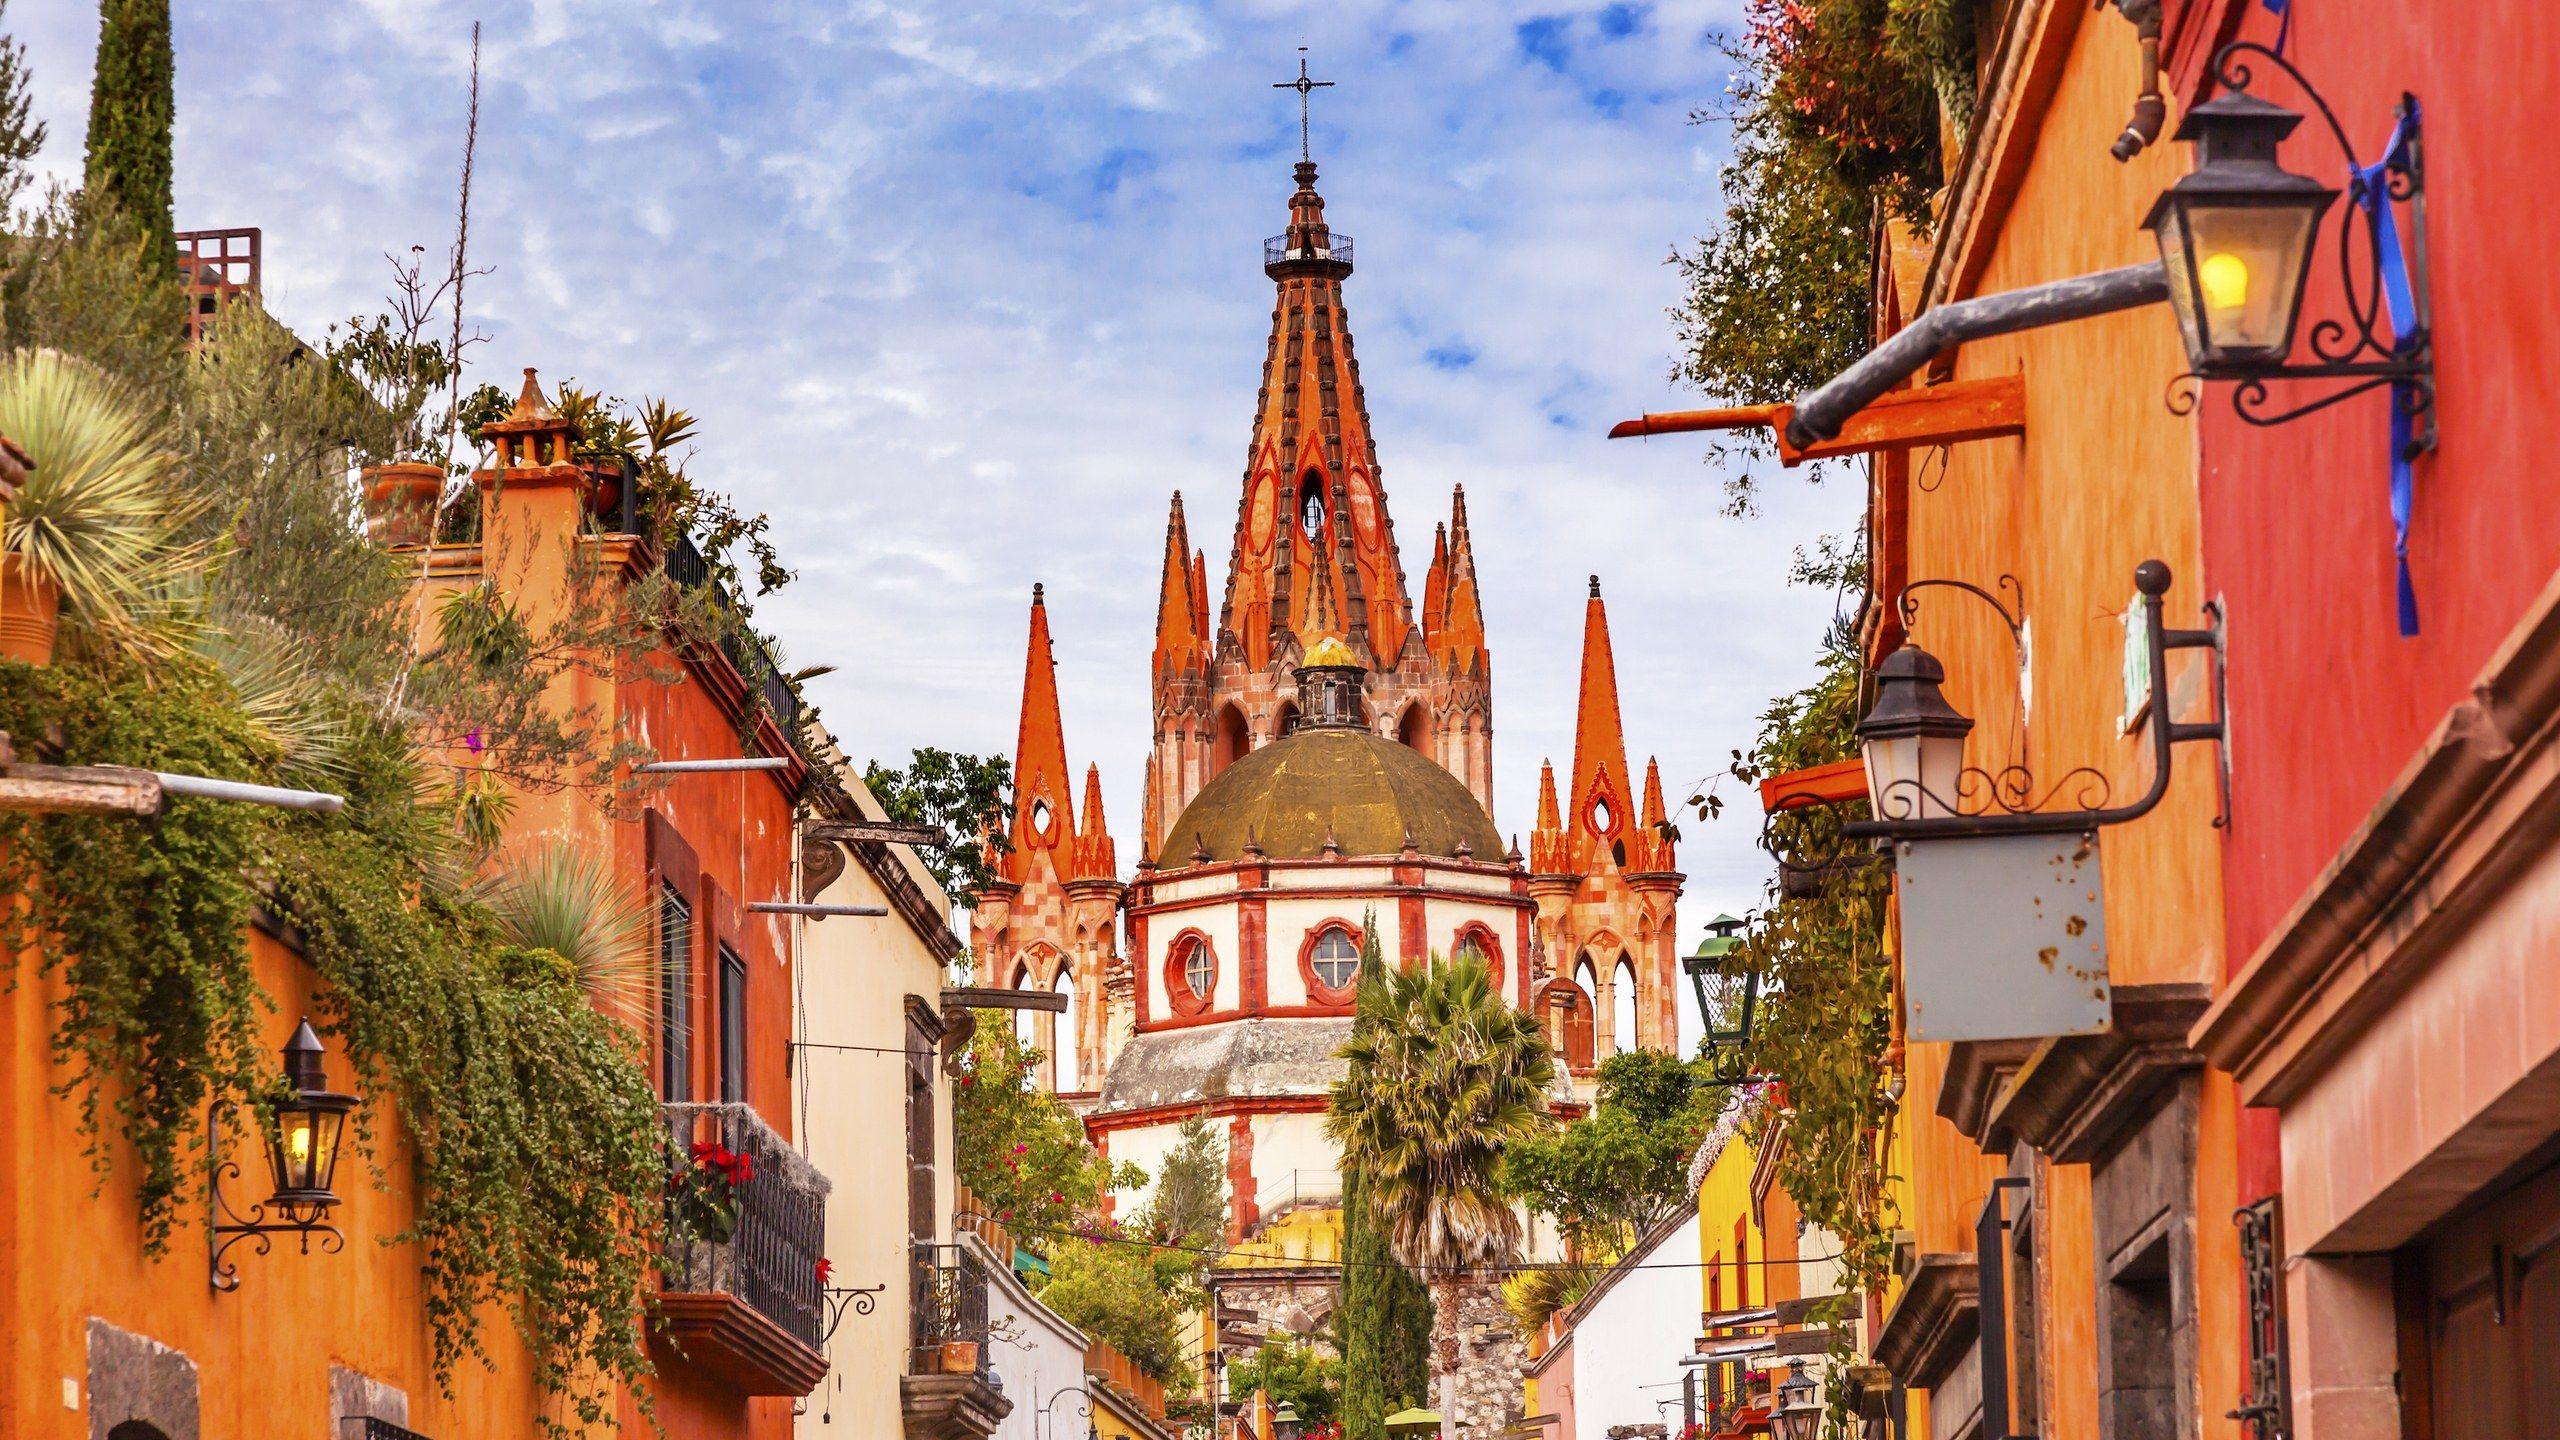 San Miguel De Allende, hình nền thành phố Mexico Top Những Hình Ảnh Đẹp